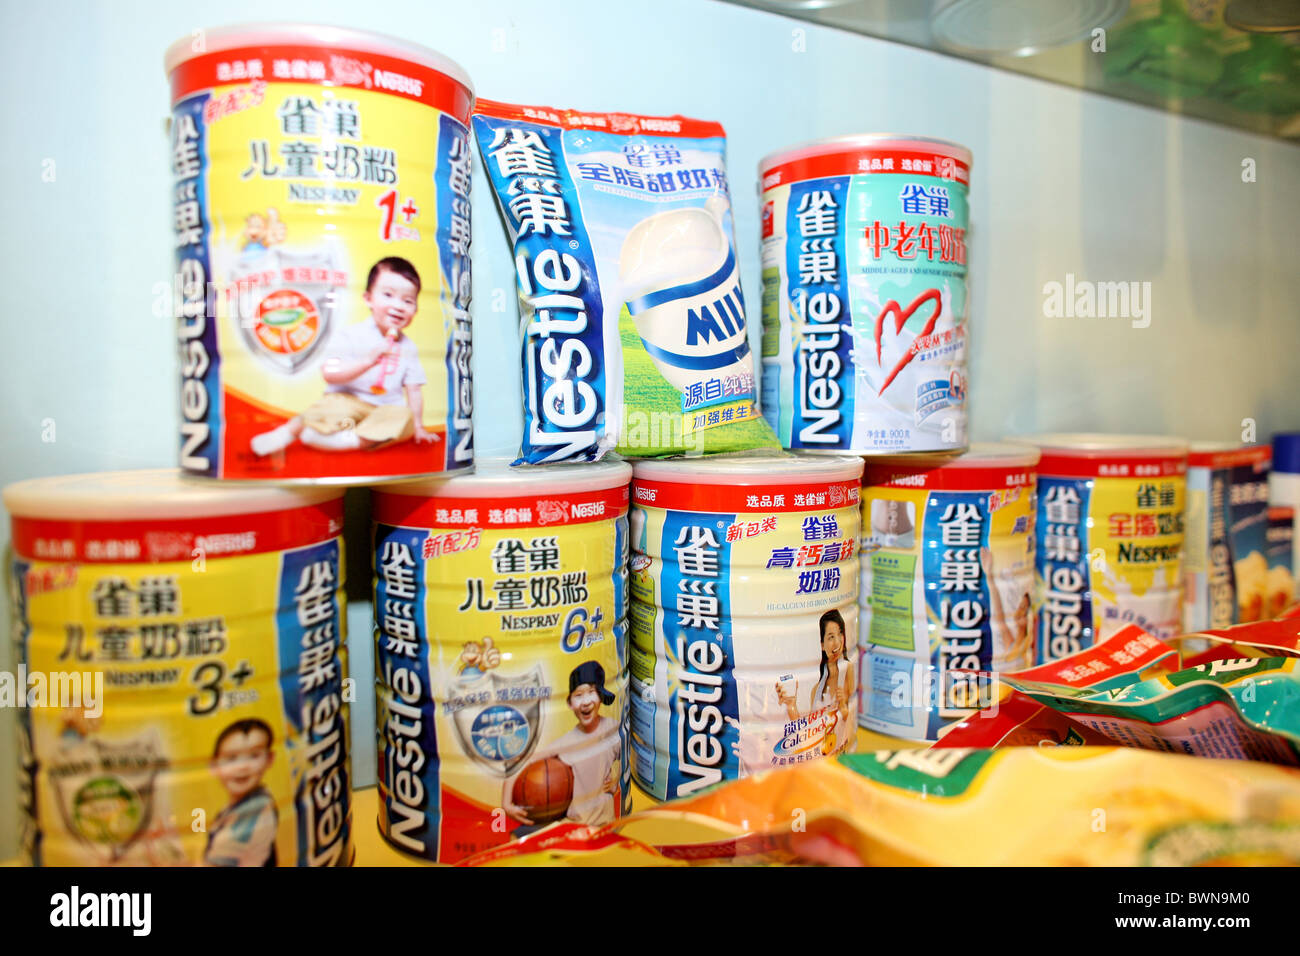 Asie Chine Avril 2008 mondial de l'alimentation de bébé Nestlé international marketing marque alimentaire boîtes boîtes chinois bébés Banque D'Images